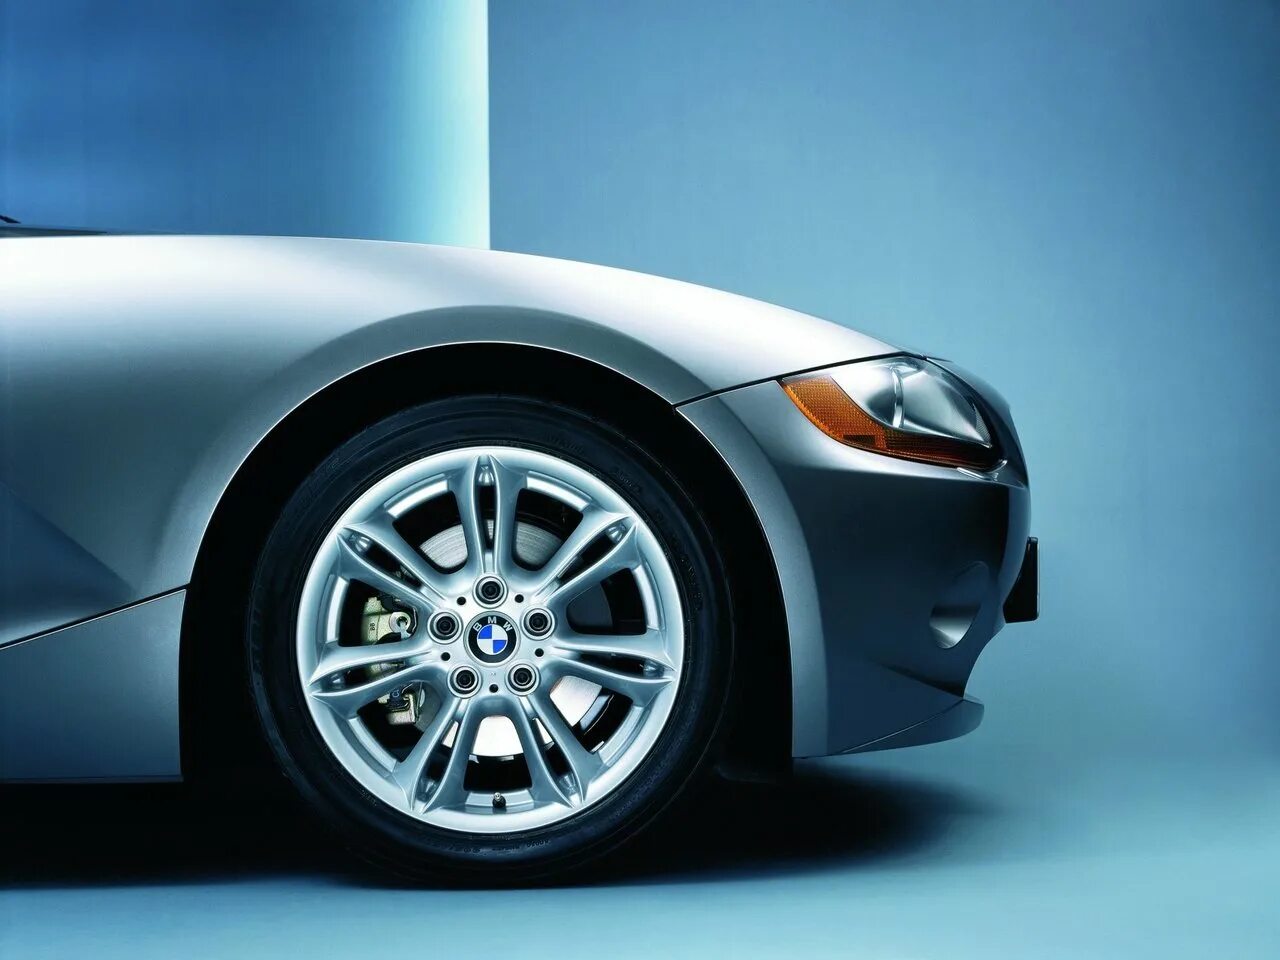 У легкового автомобиля 4 колеса. BMW z4 Wheels. Колесо машины. Колесо легкового автомобиля. Машинное колесо.